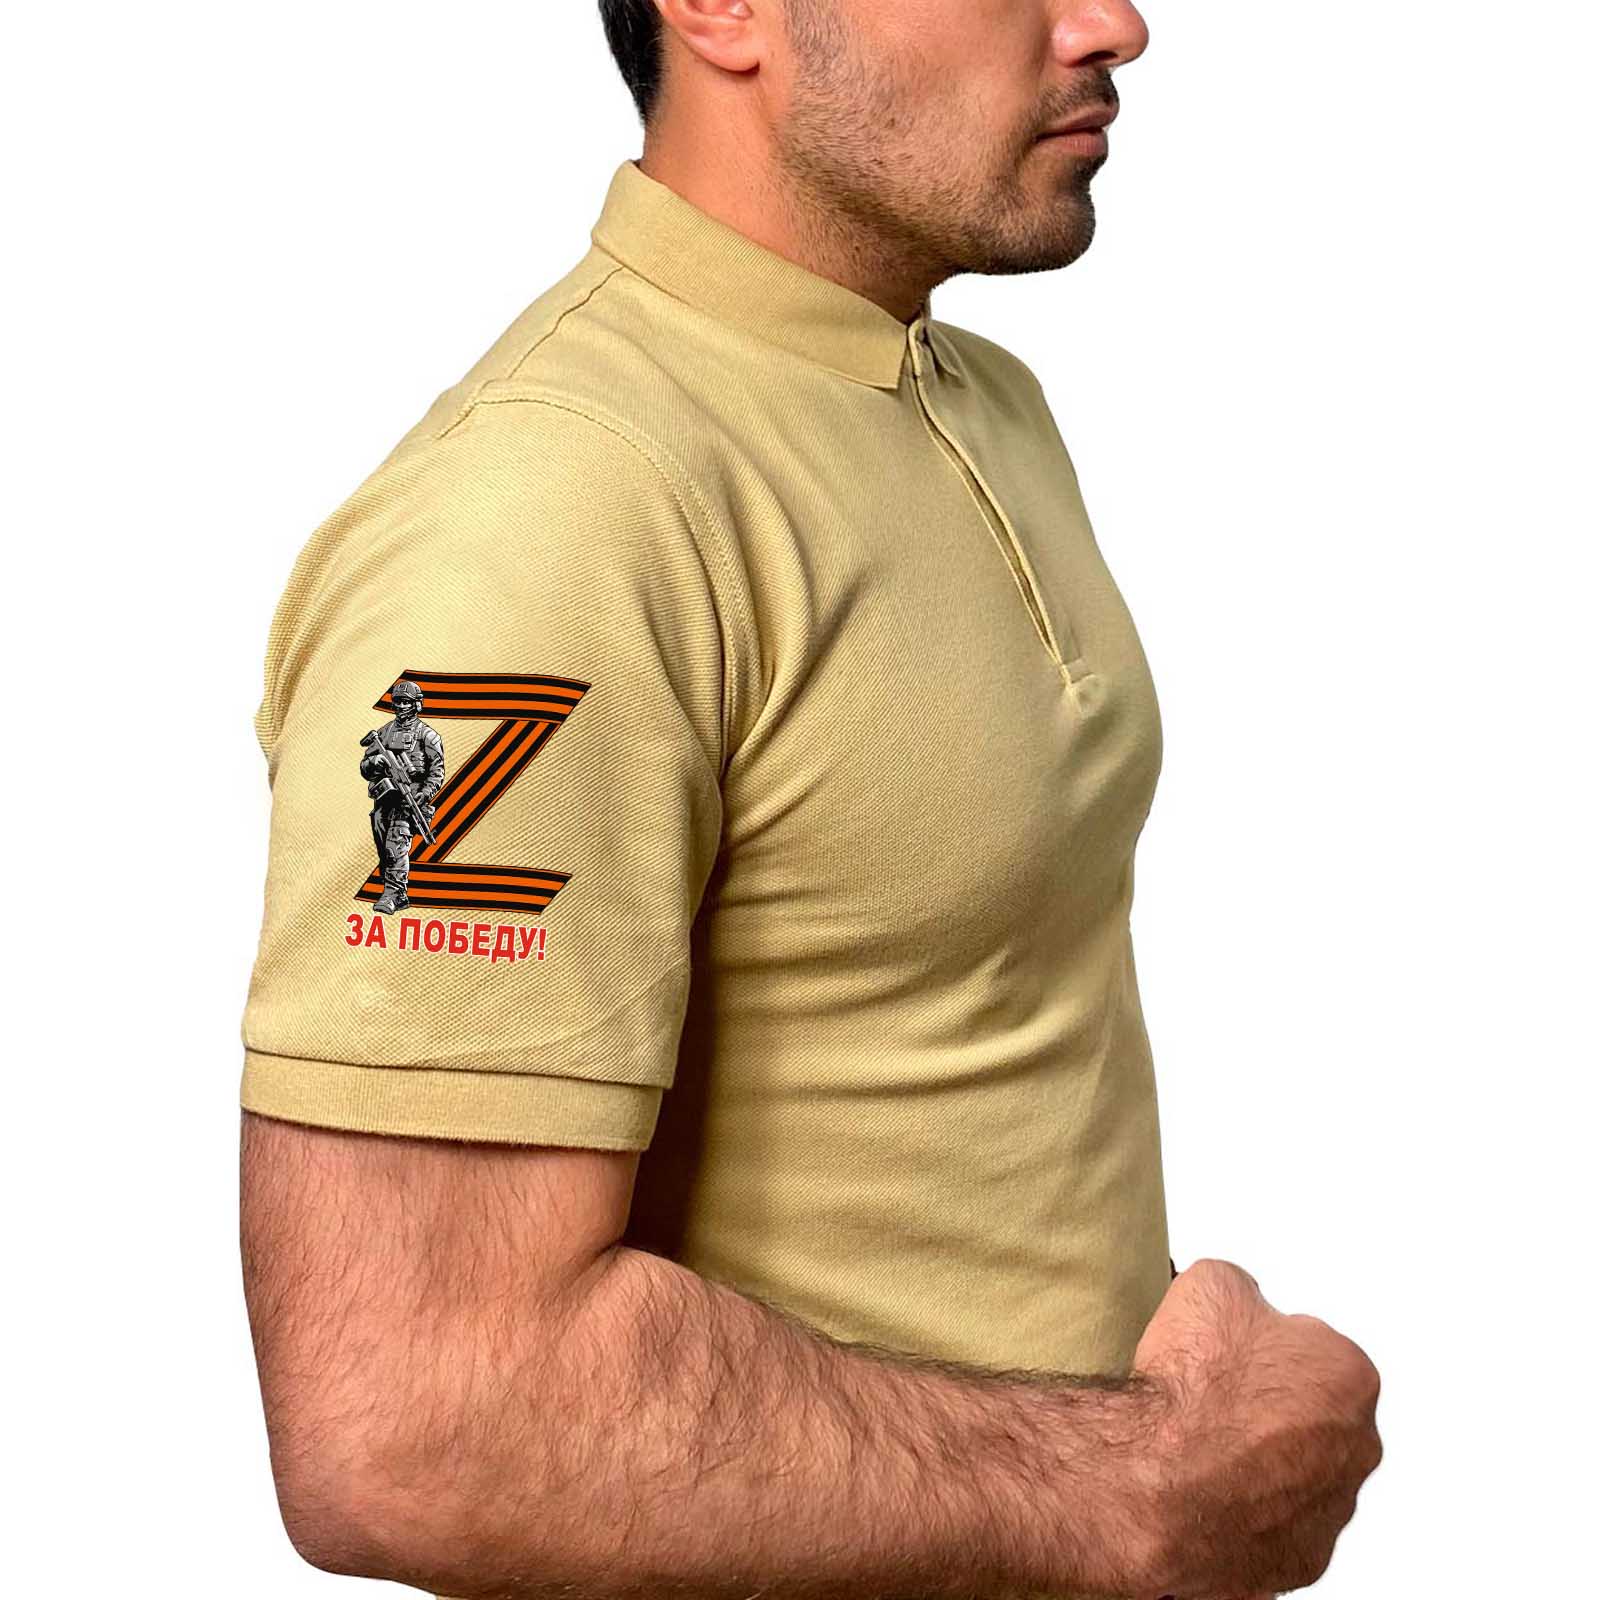 Купить футболку-поло с георгиевским термопринтом «Z» на рукаве